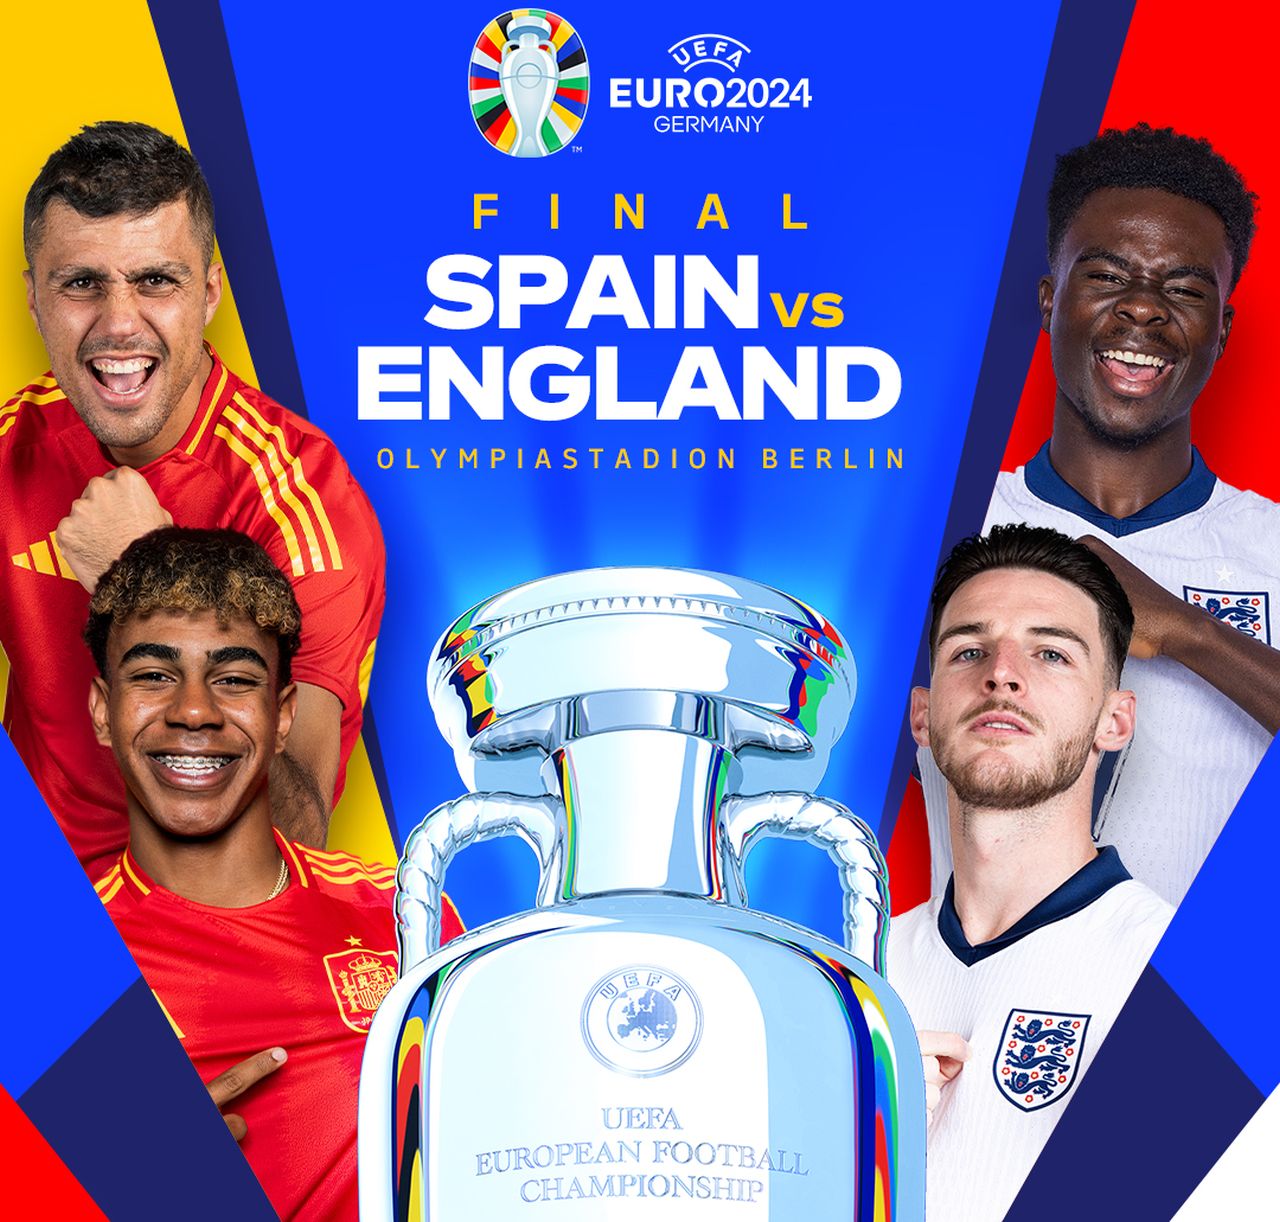 Hiszpania zmierzy się z Anglią w finale piłkarskich mistrzostw Europy, który zostanie rozegrany na Stadionie Olimpijskim w Berlinie, z udziałem ponad siedemdziesięciu tysięcy kibiców.